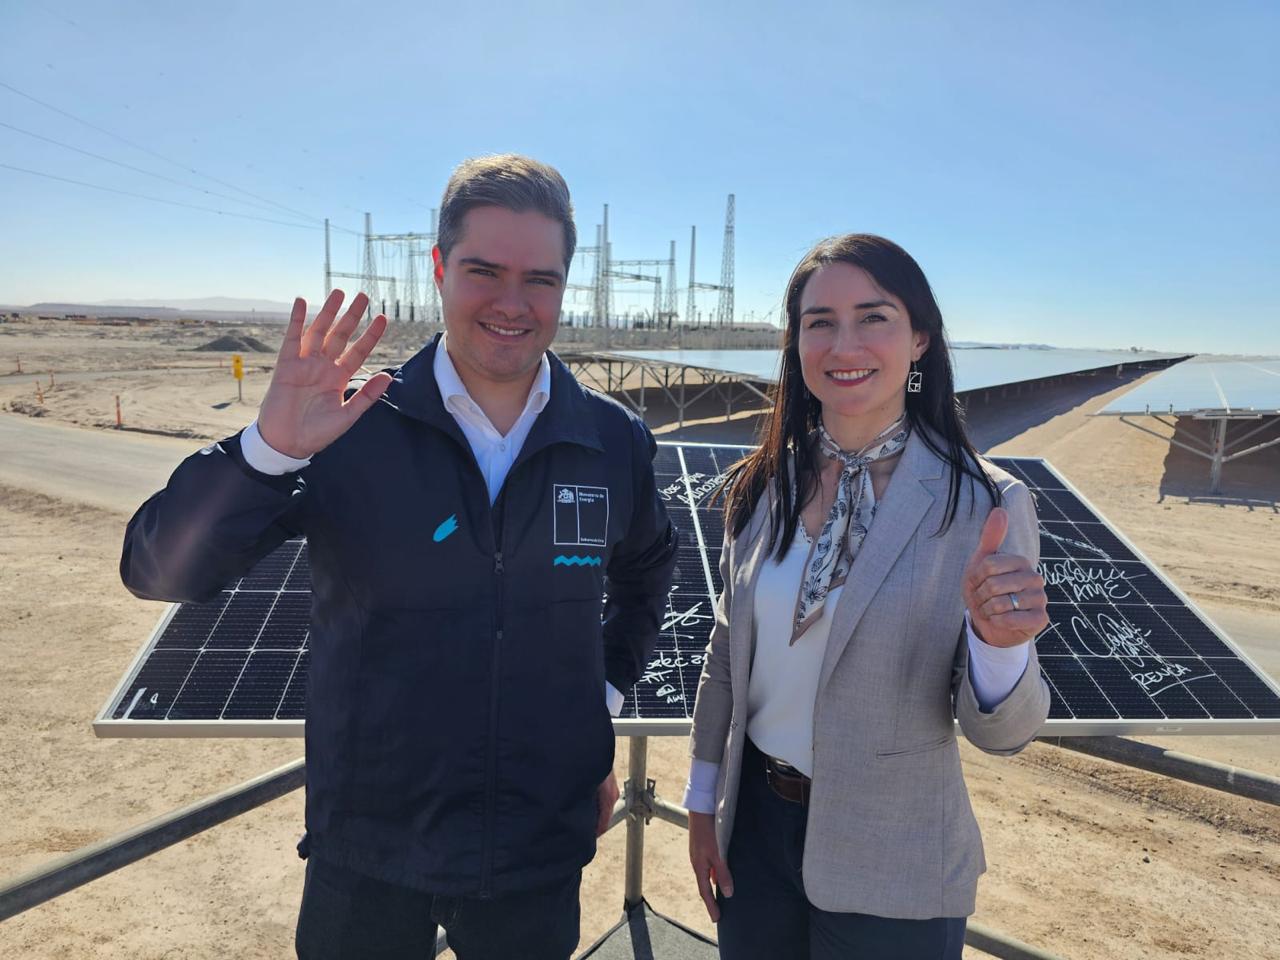 Subsecretario Ramos encabeza inauguración de la planta solar más grande de Chile